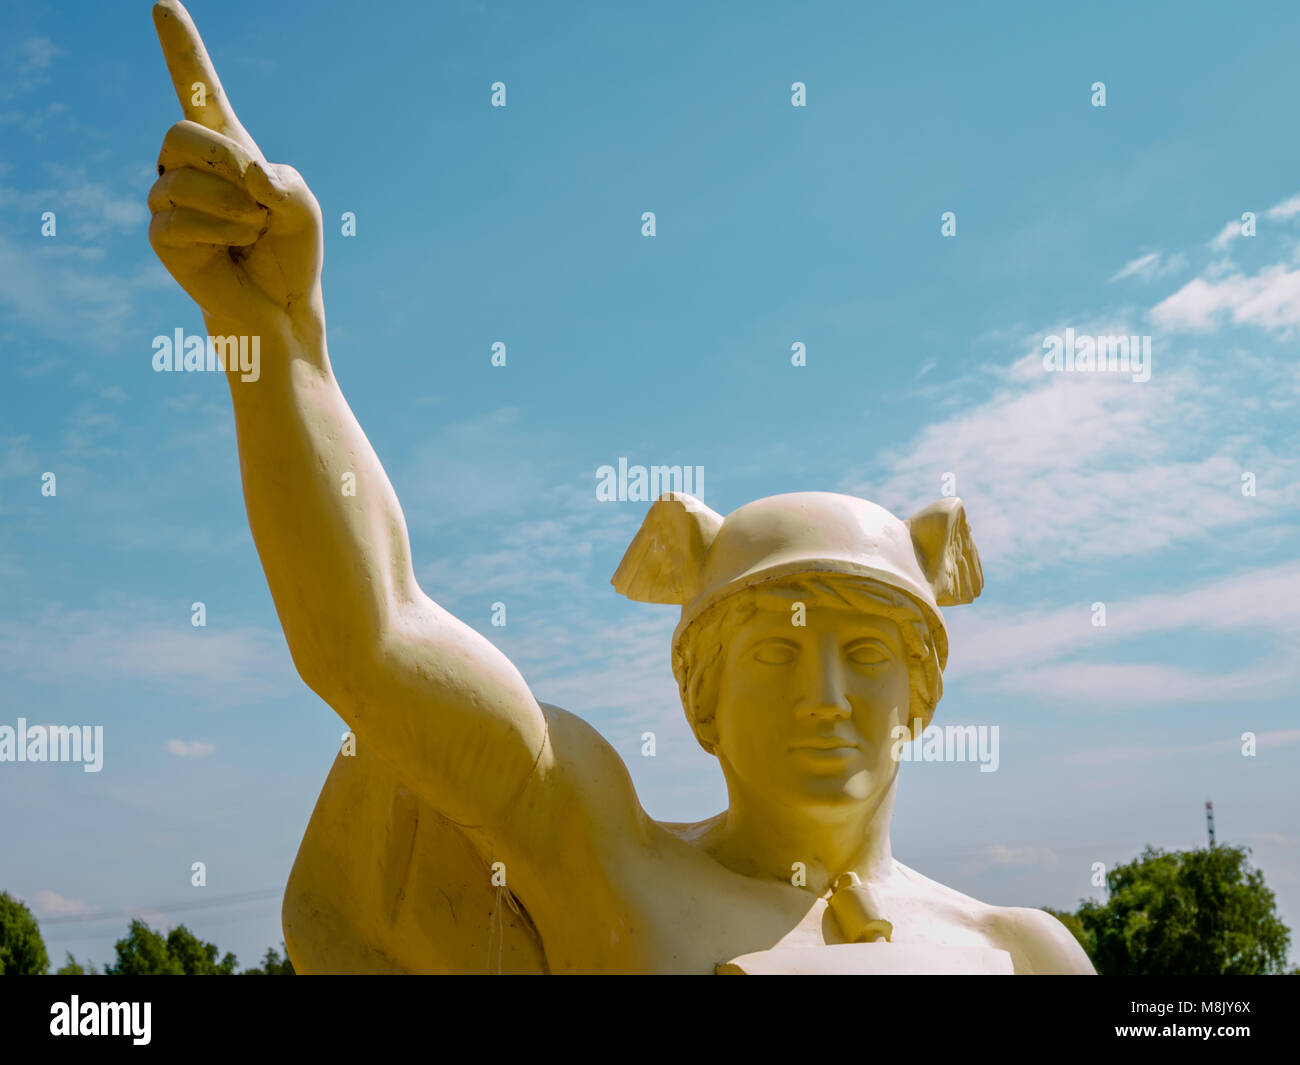 Hamburg, Deutschland - 19. Mai 2016: Der obere Teil der Statue des Hermes in Verbindung von Industrial Museum Wasserkunst Kaltehofe, einer ehemaligen Kläranlage. Stockfoto